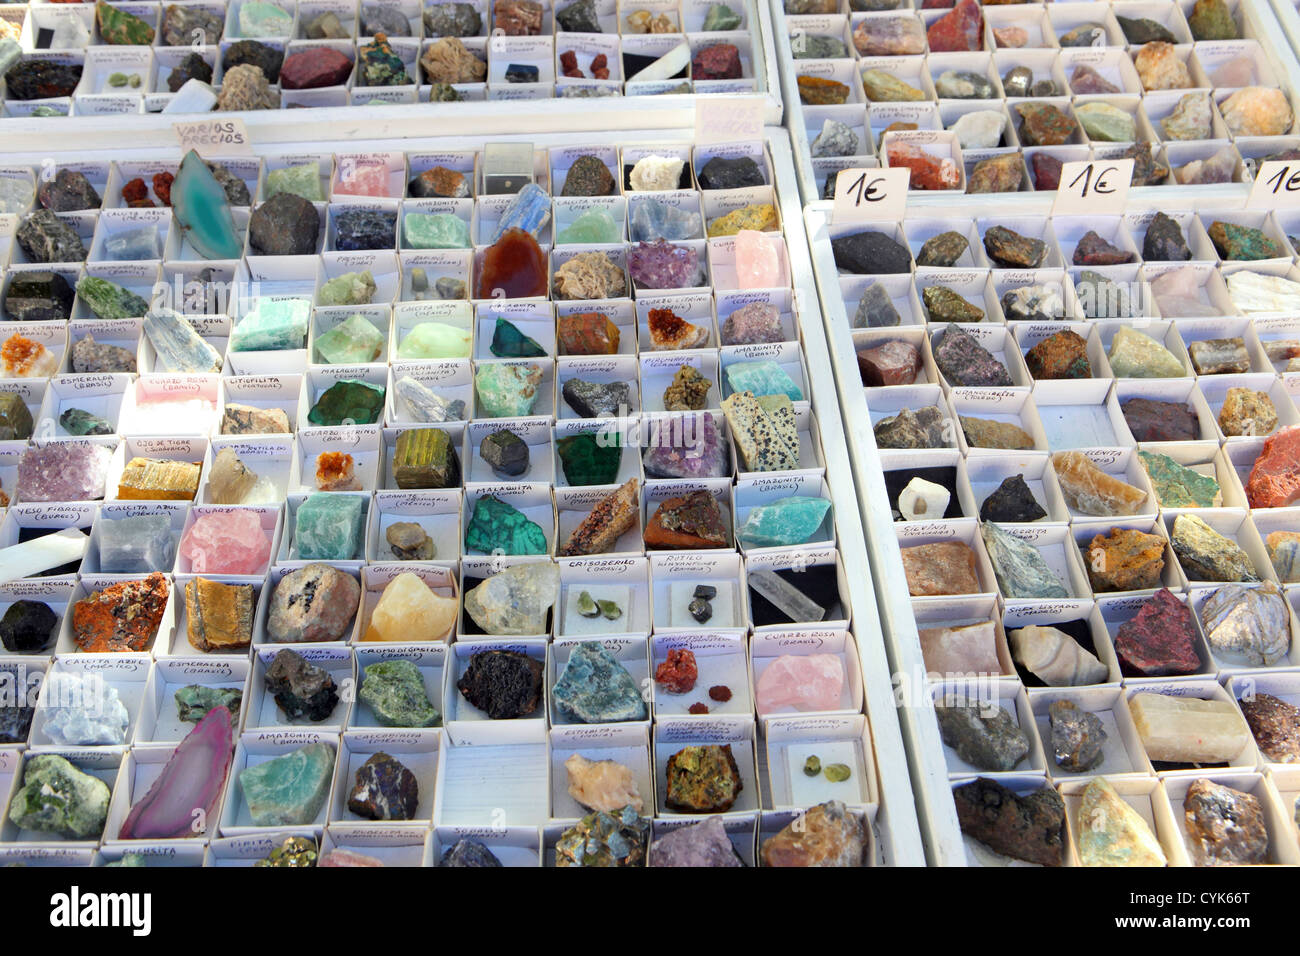 Cristal de roche pierre collection de minéraux à vendre sélection, El Rastro, dimanche street market, Madrid, Espagne Banque D'Images